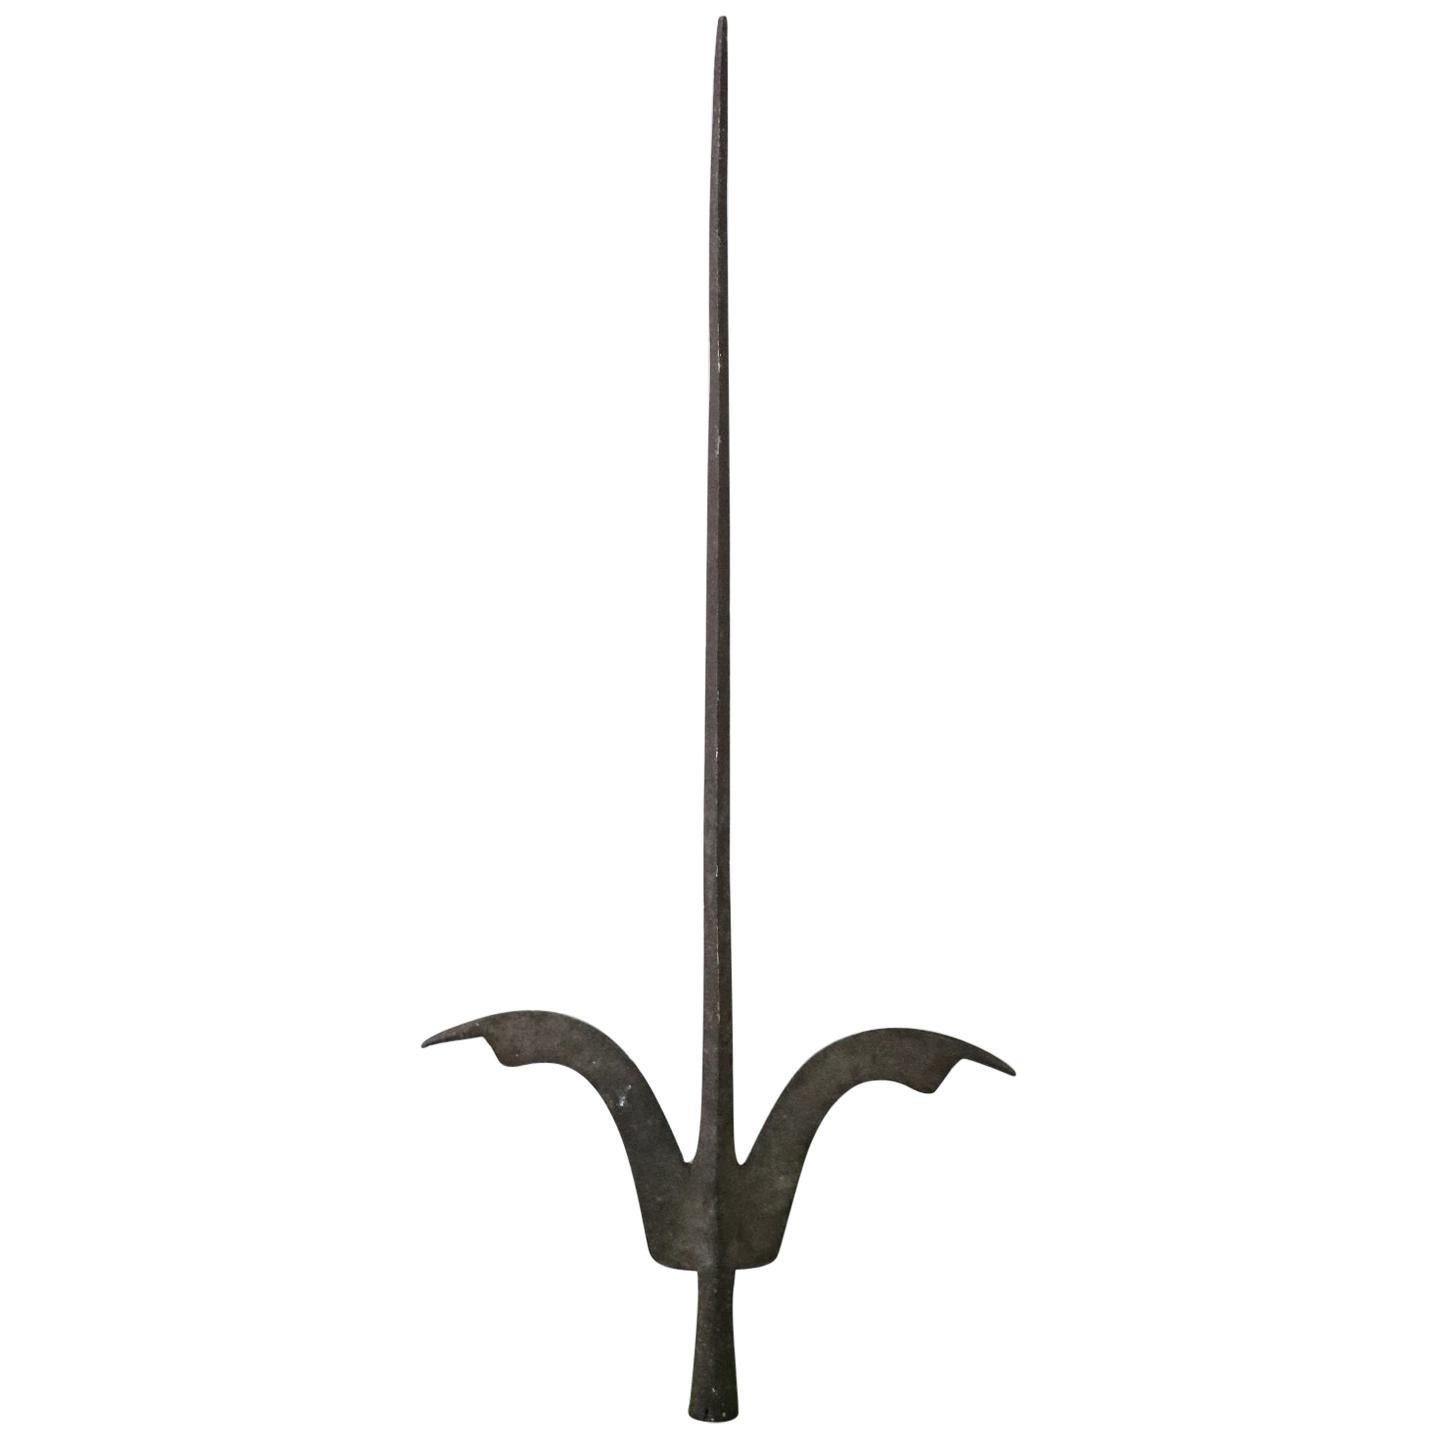 16th Century Italian Renaissance Antique Iron Halberd Spear